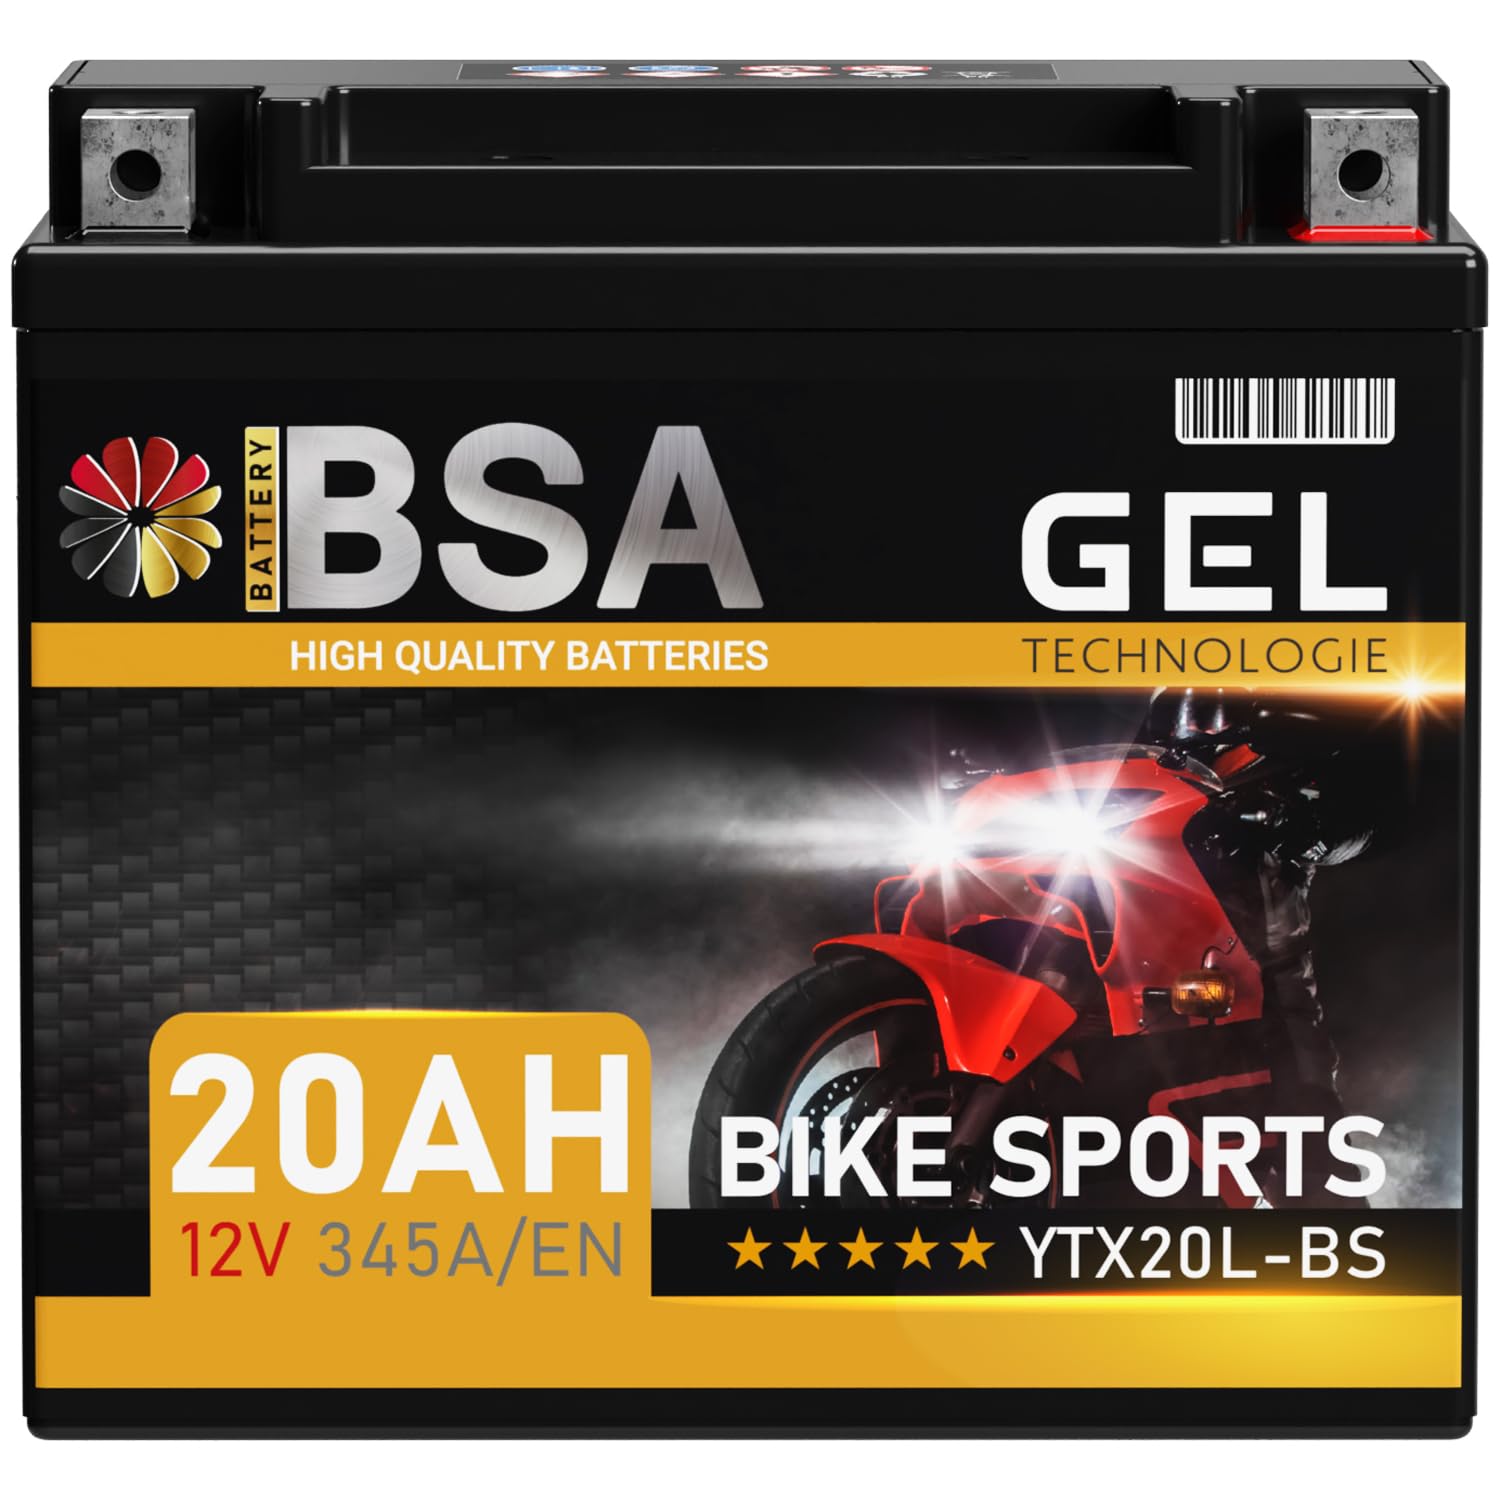 BSA YTX20L-BS GEL Motorradbatterie 12V 20Ah 345A/EN Batterie doppelte Lebensdauer entspricht 51821 GTX20L-BS CTX20L-BS vorgeladen auslaufsicher wartungsfrei von BSA BATTERY HIGH QUALITY BATTERIES